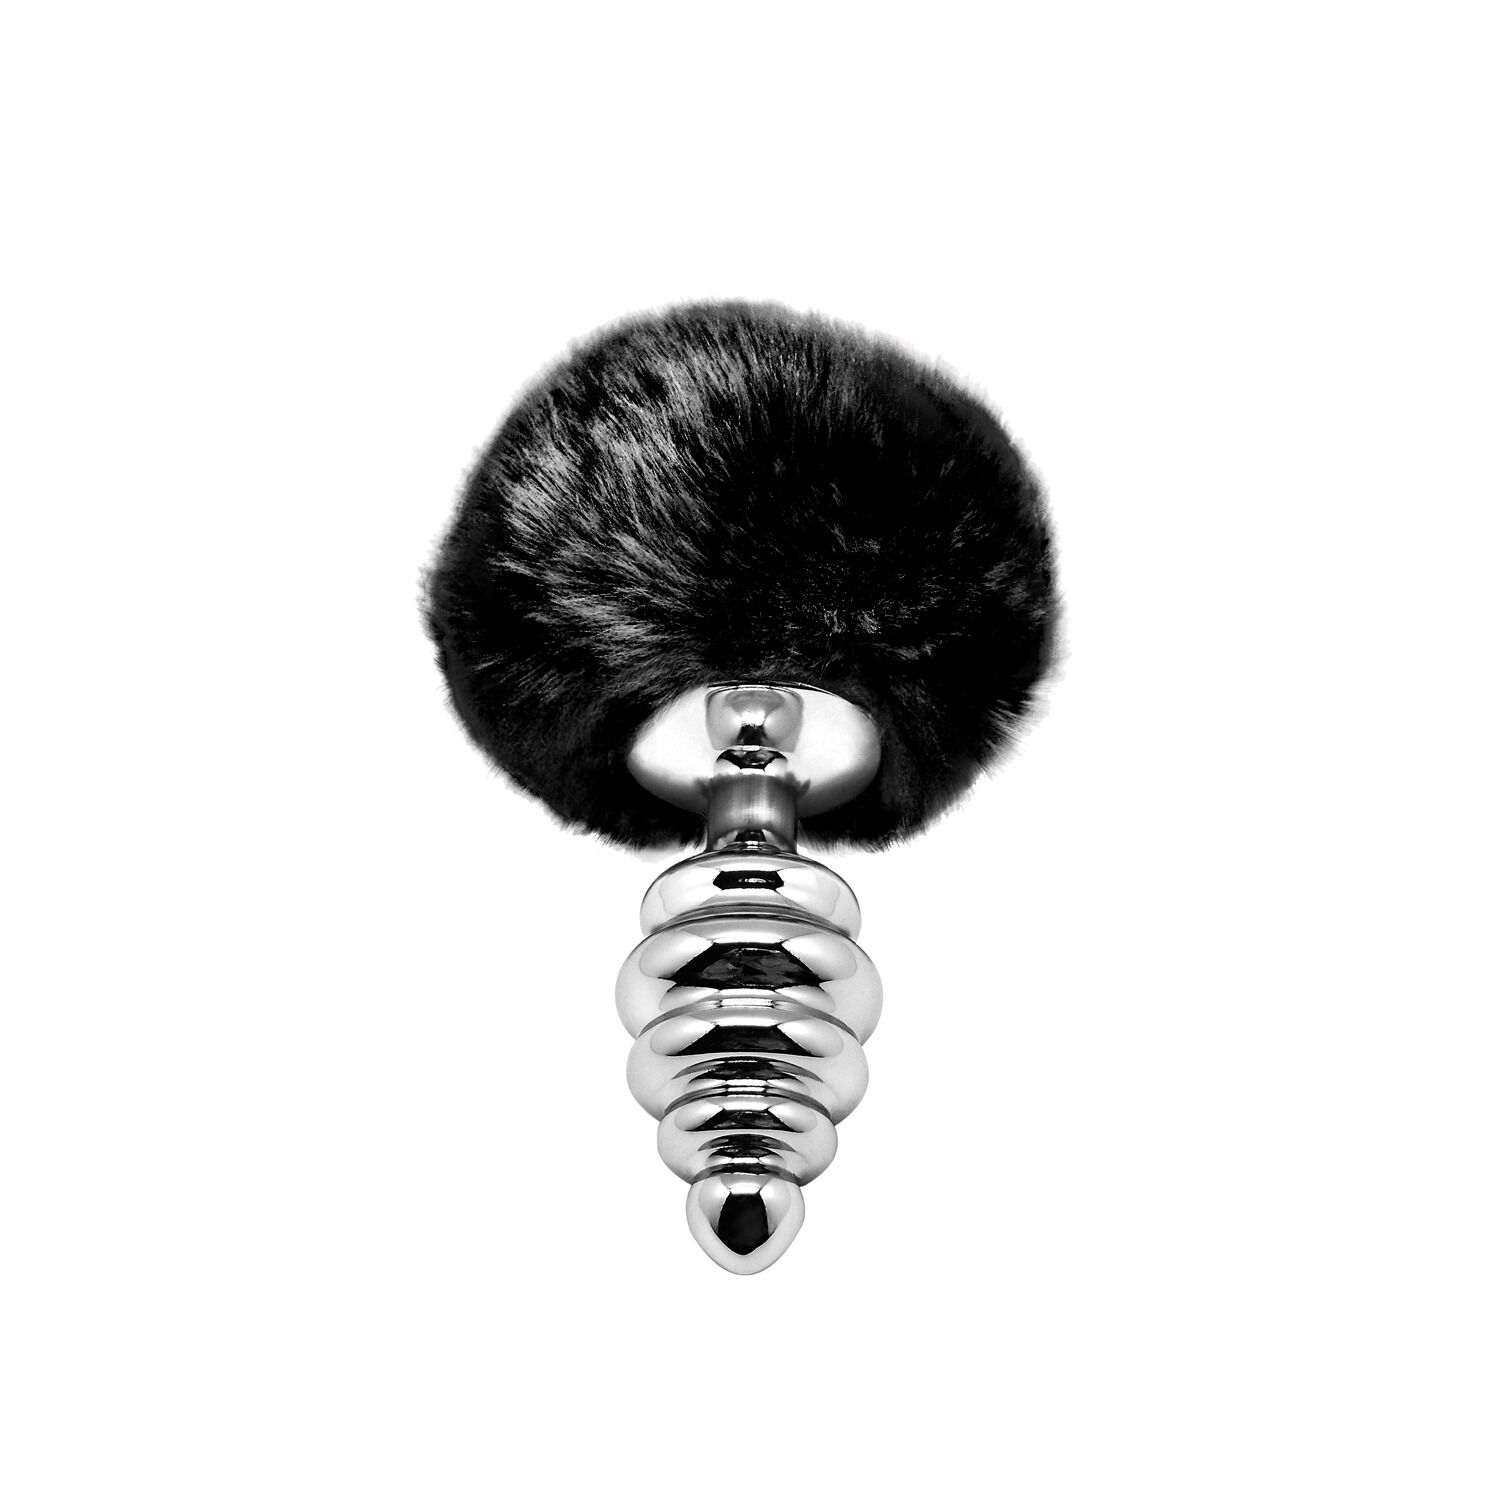 Металлическая анальная проб�ка Кроличий хвостик Alive Fluffy Twist Plug M Black, диаметр 3,4 см